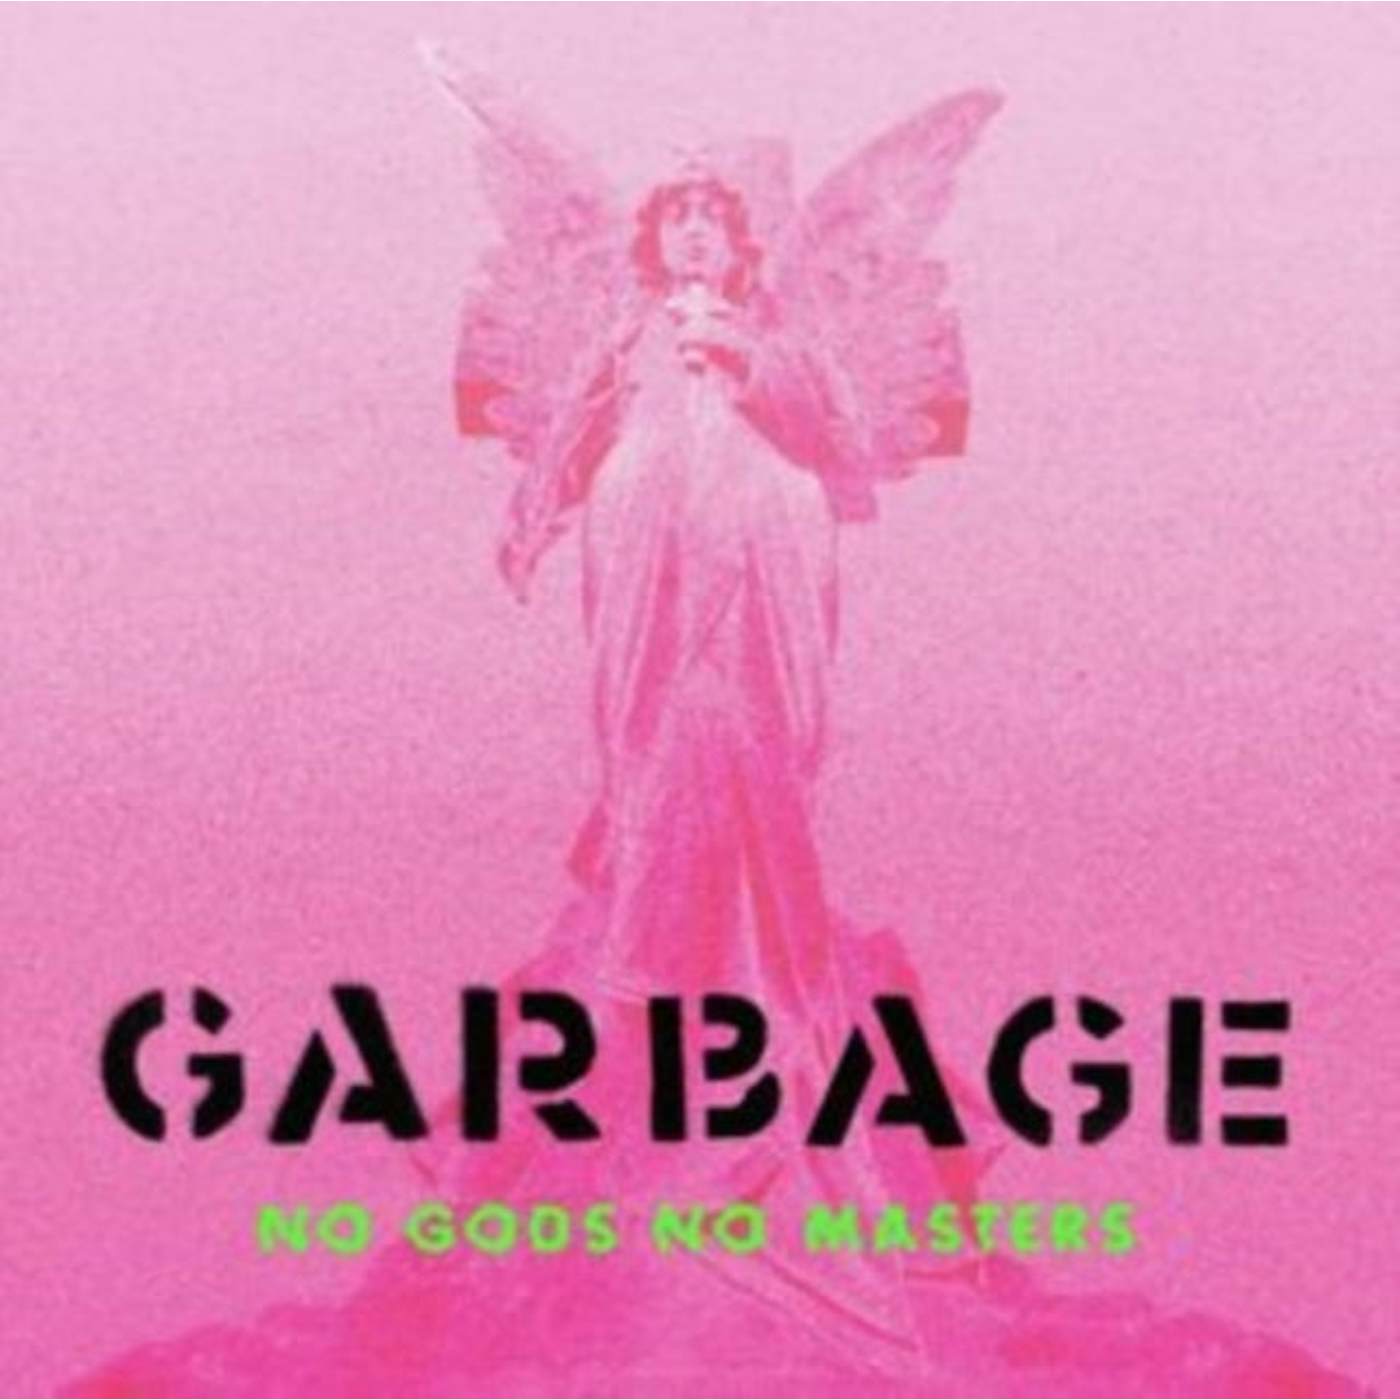 Garbage LP Vinyl Record - No Gods No Masters